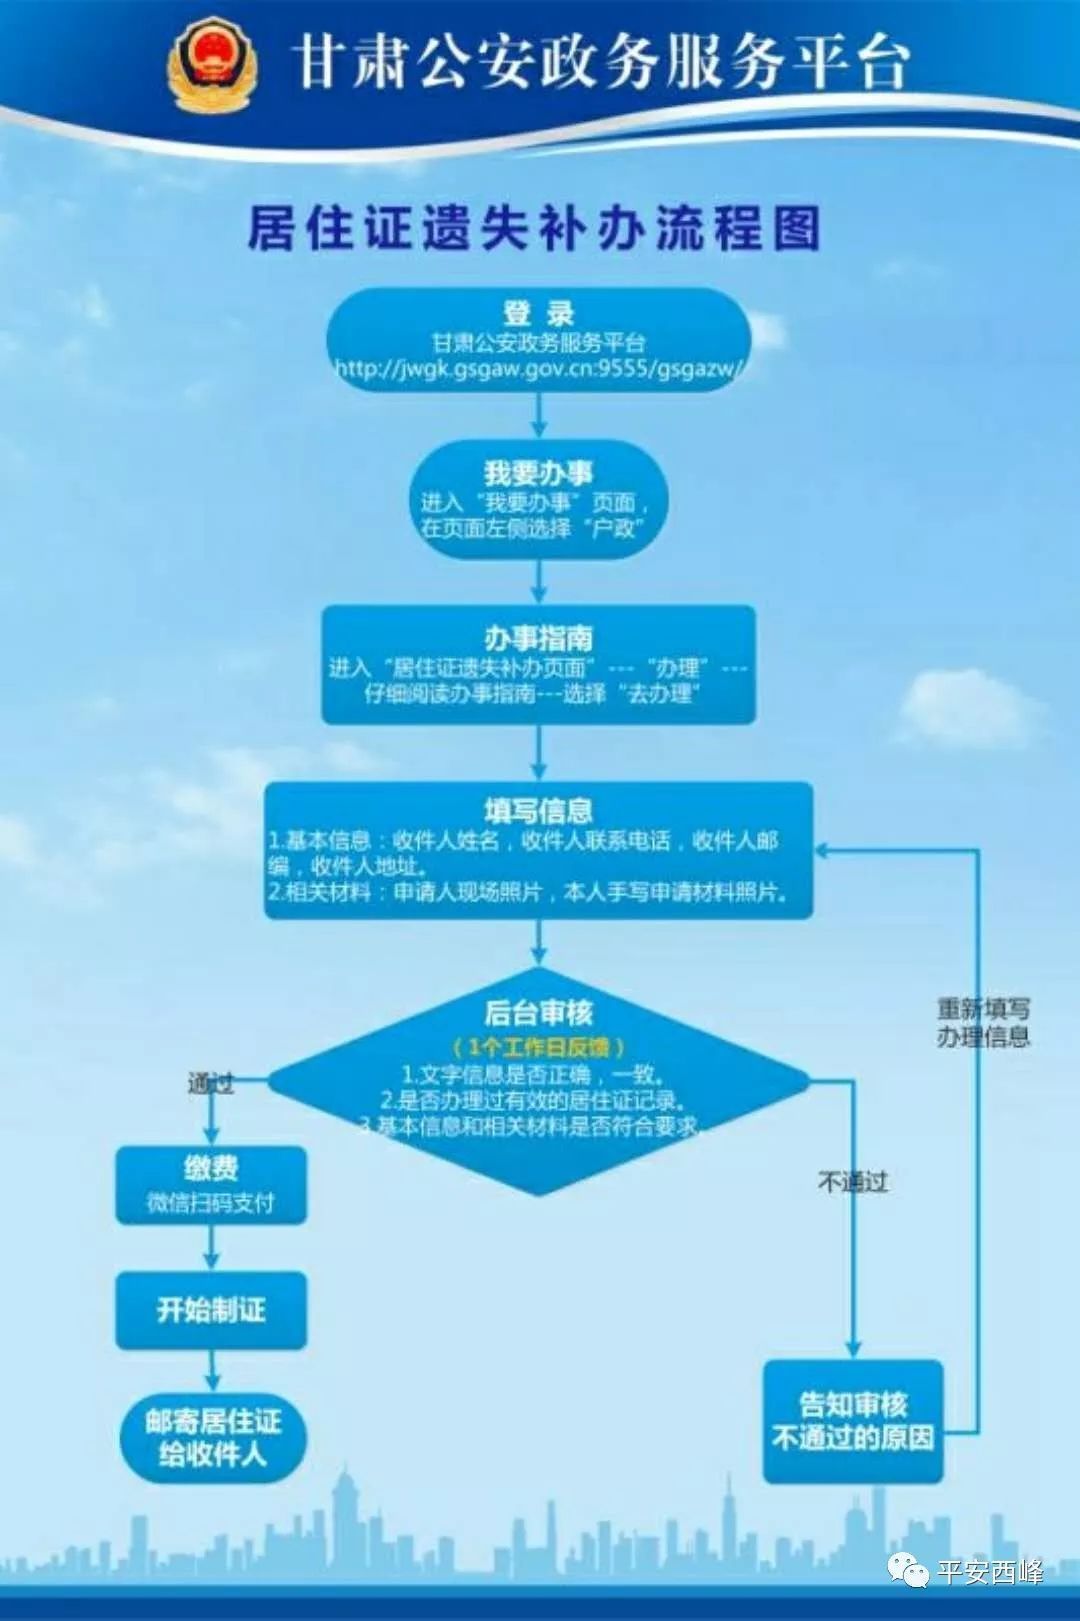 【便民利民】甘肃公安政务服务平台业务办理流